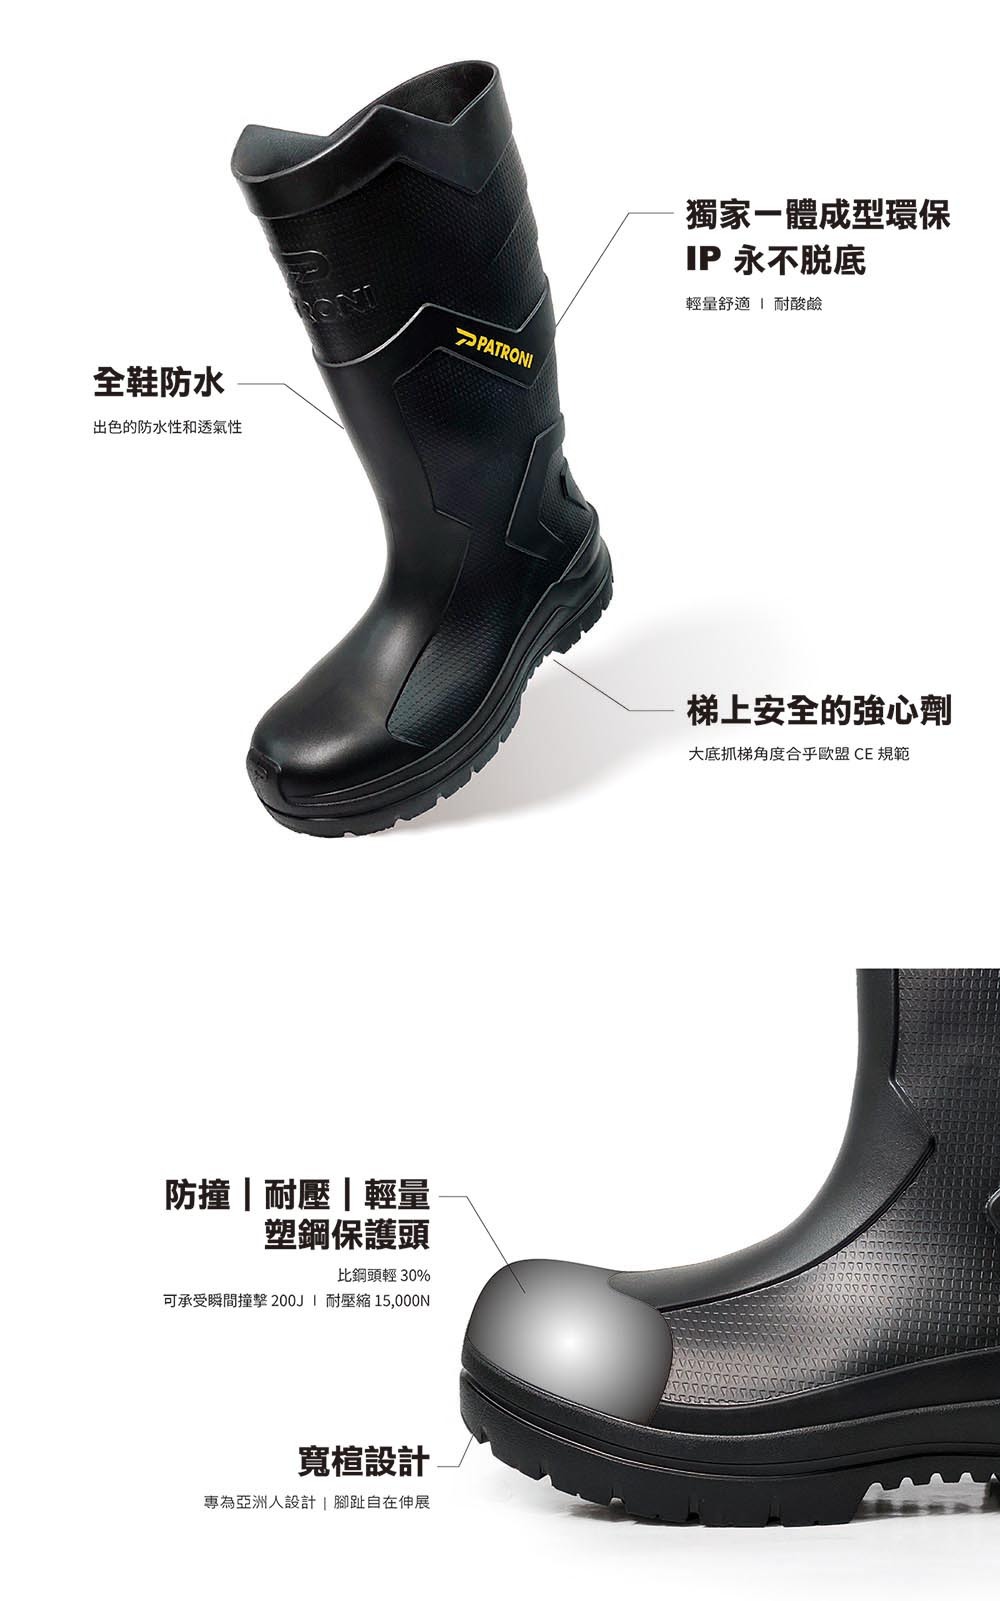 SF2380 安全雨鞋